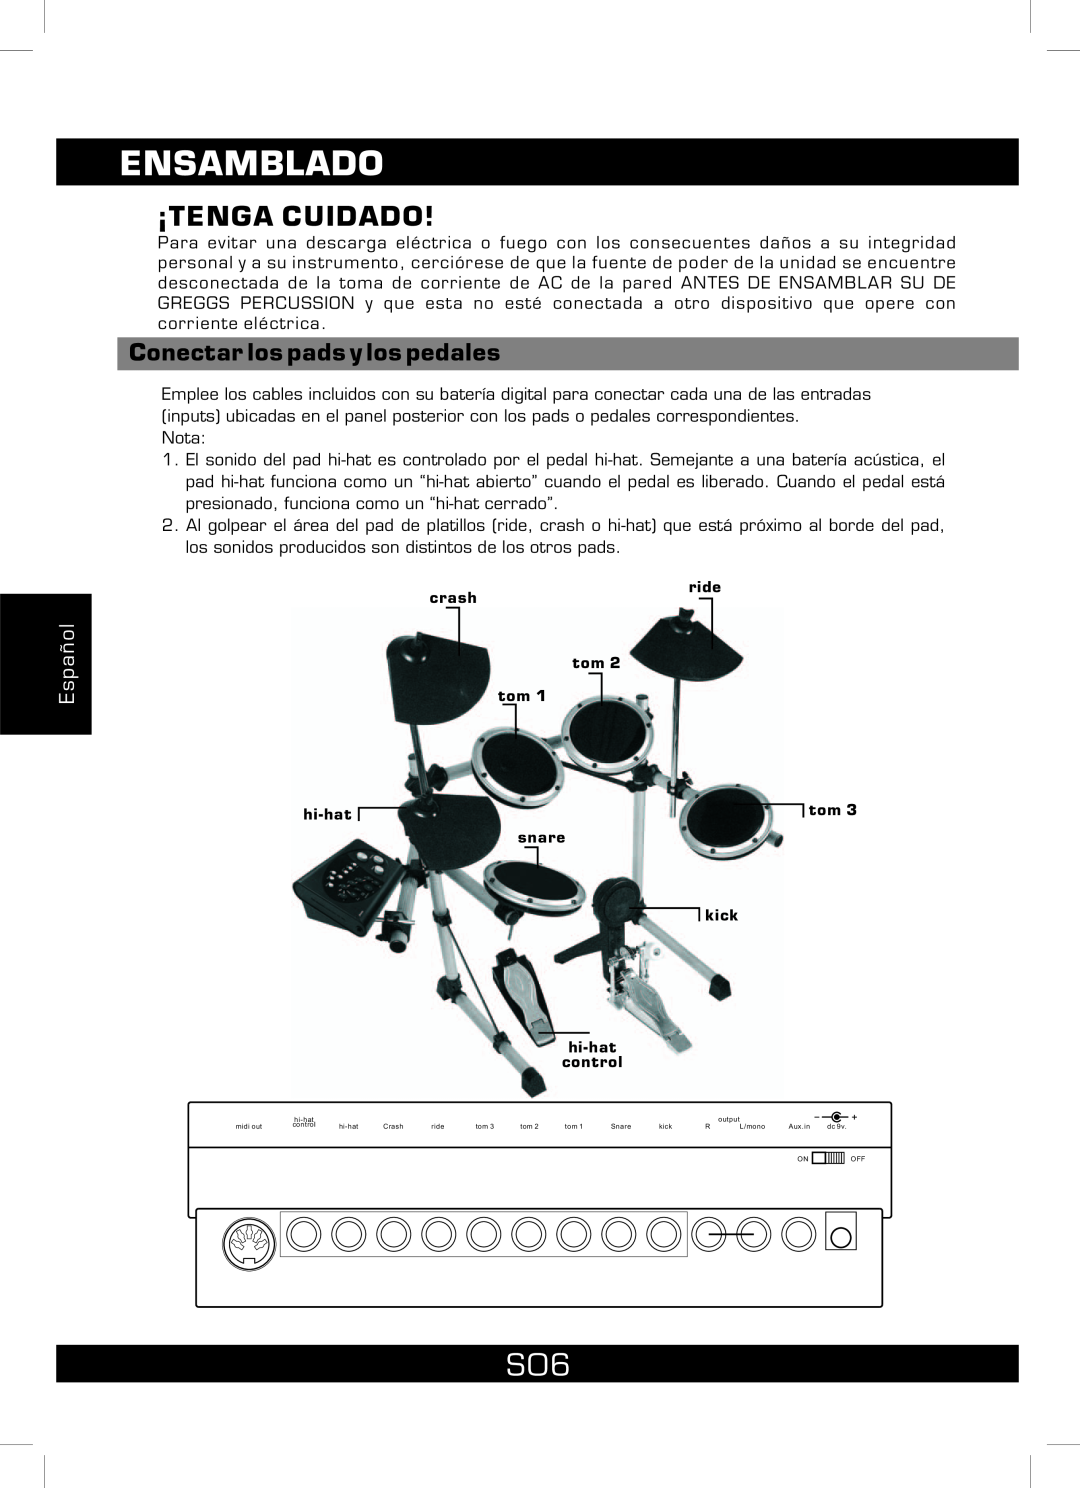 The Singing Machine SMI-1460 instruction manual Ensamblado, Conectar los pads y los pedales, ¡Tenga Cuidado, Español 